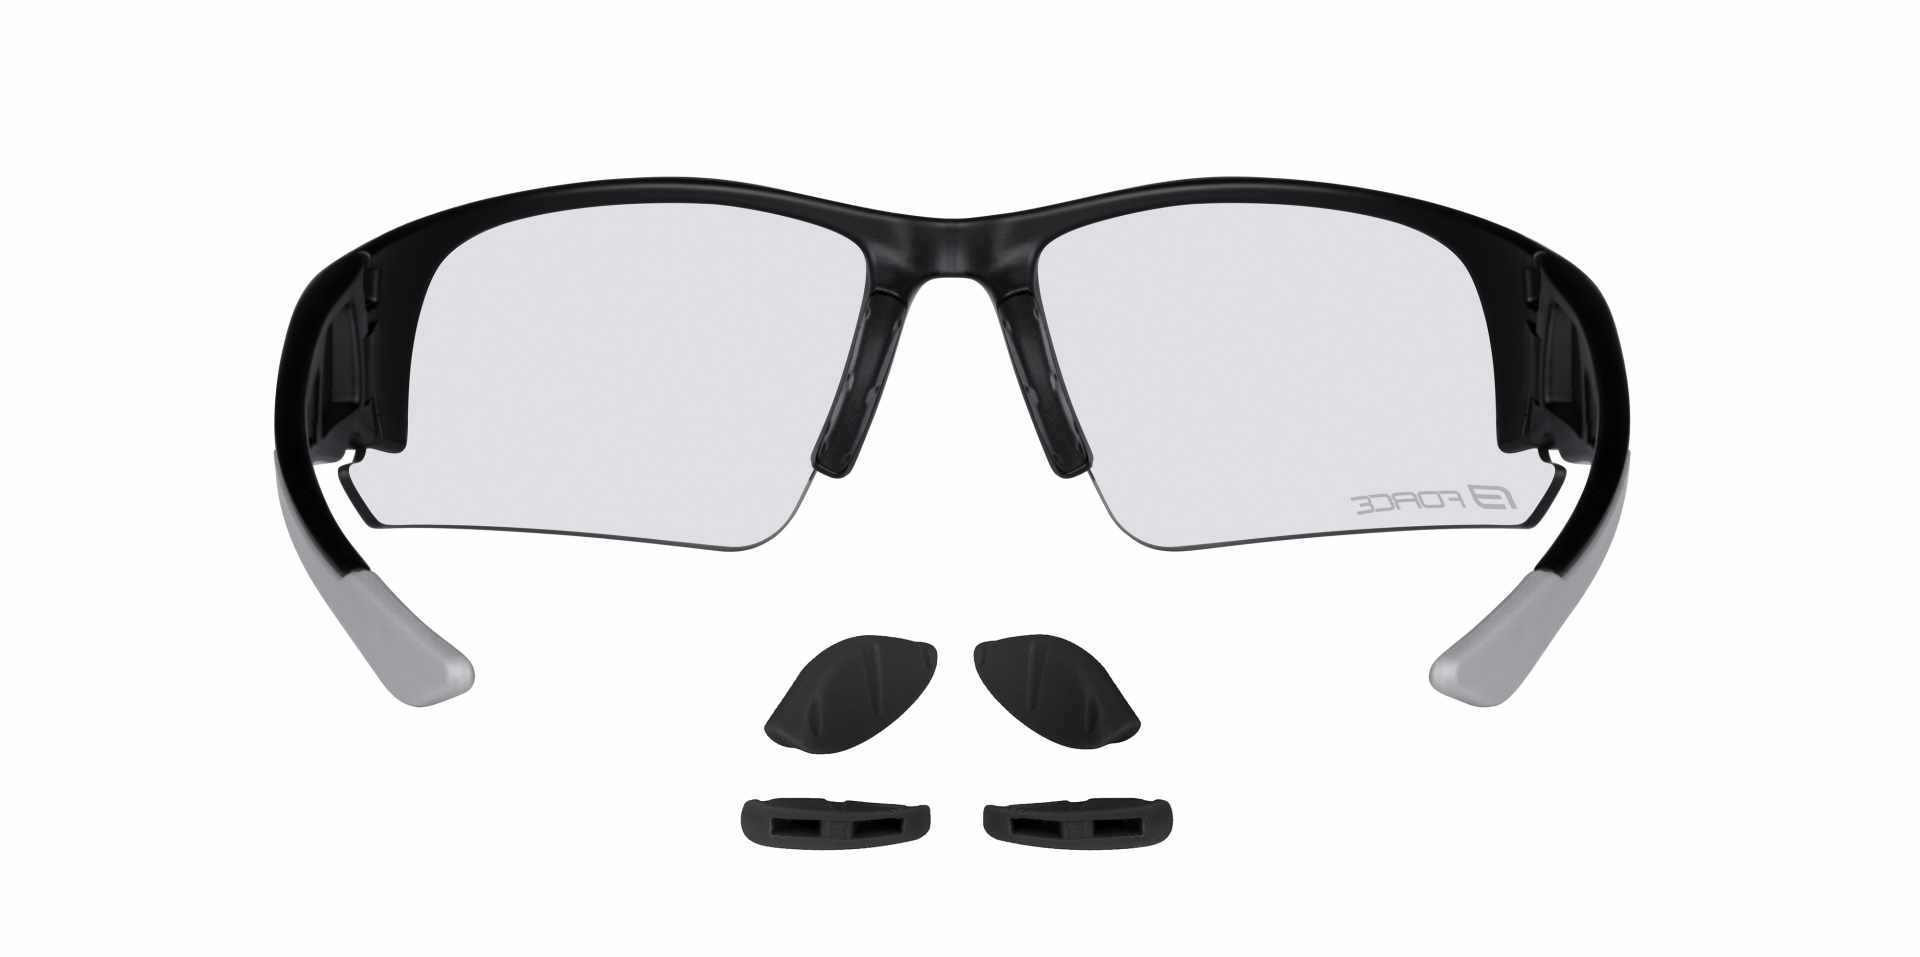 brýle FORCE CALIBRE černé, fotochromatická skla